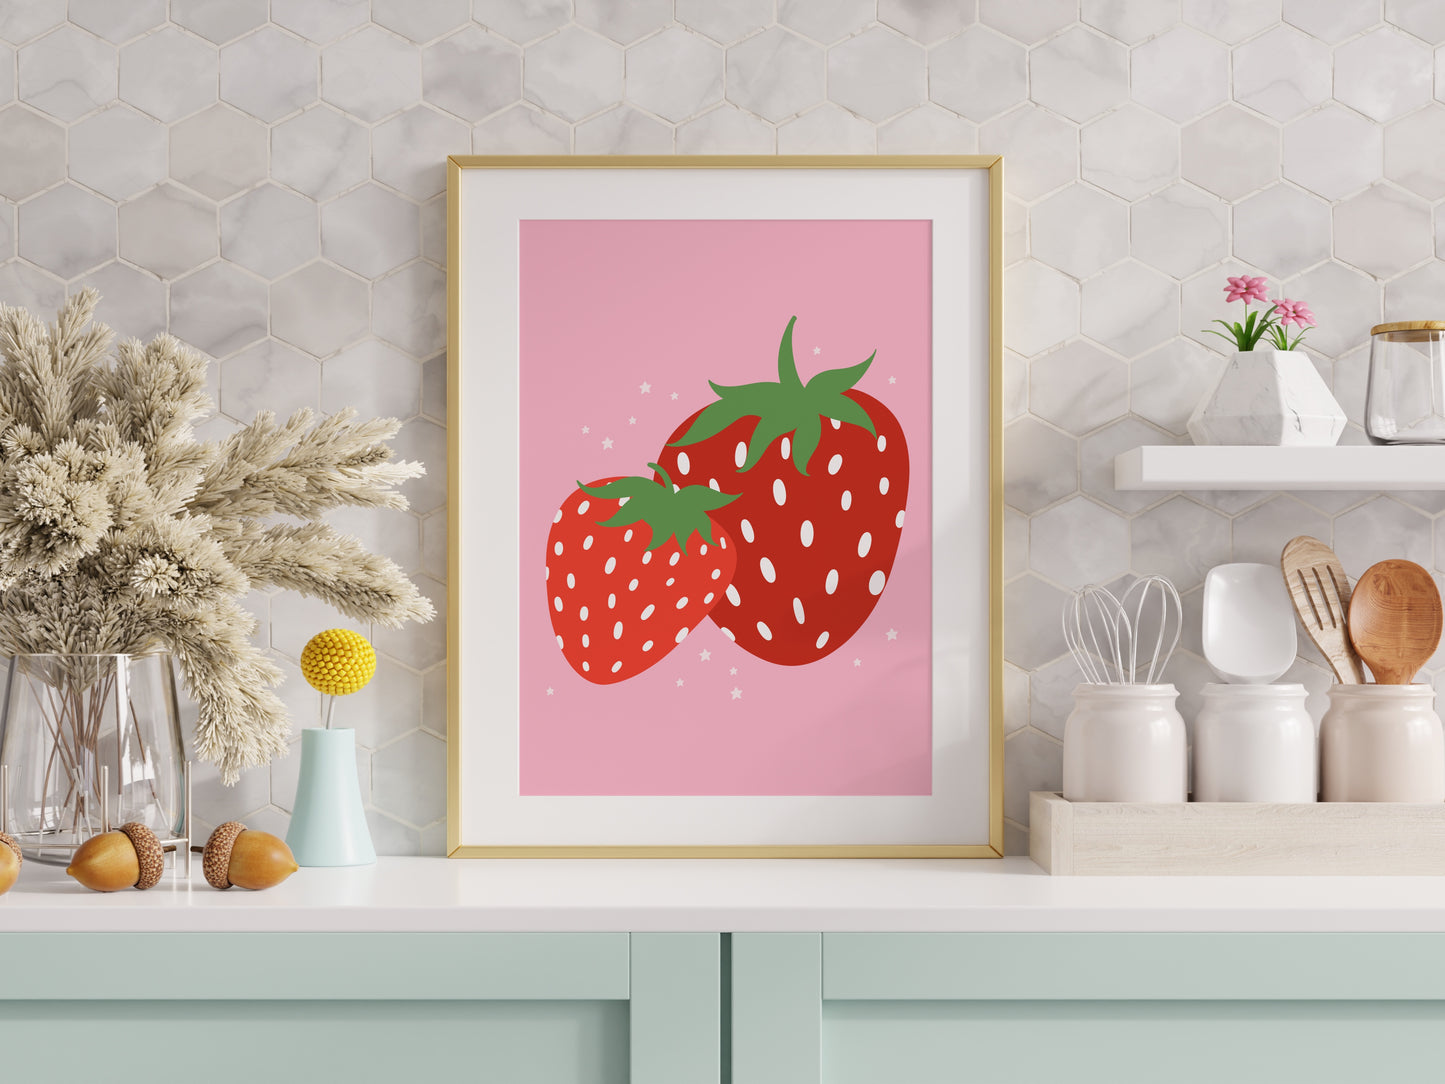 Big Strawberries Print in Pink